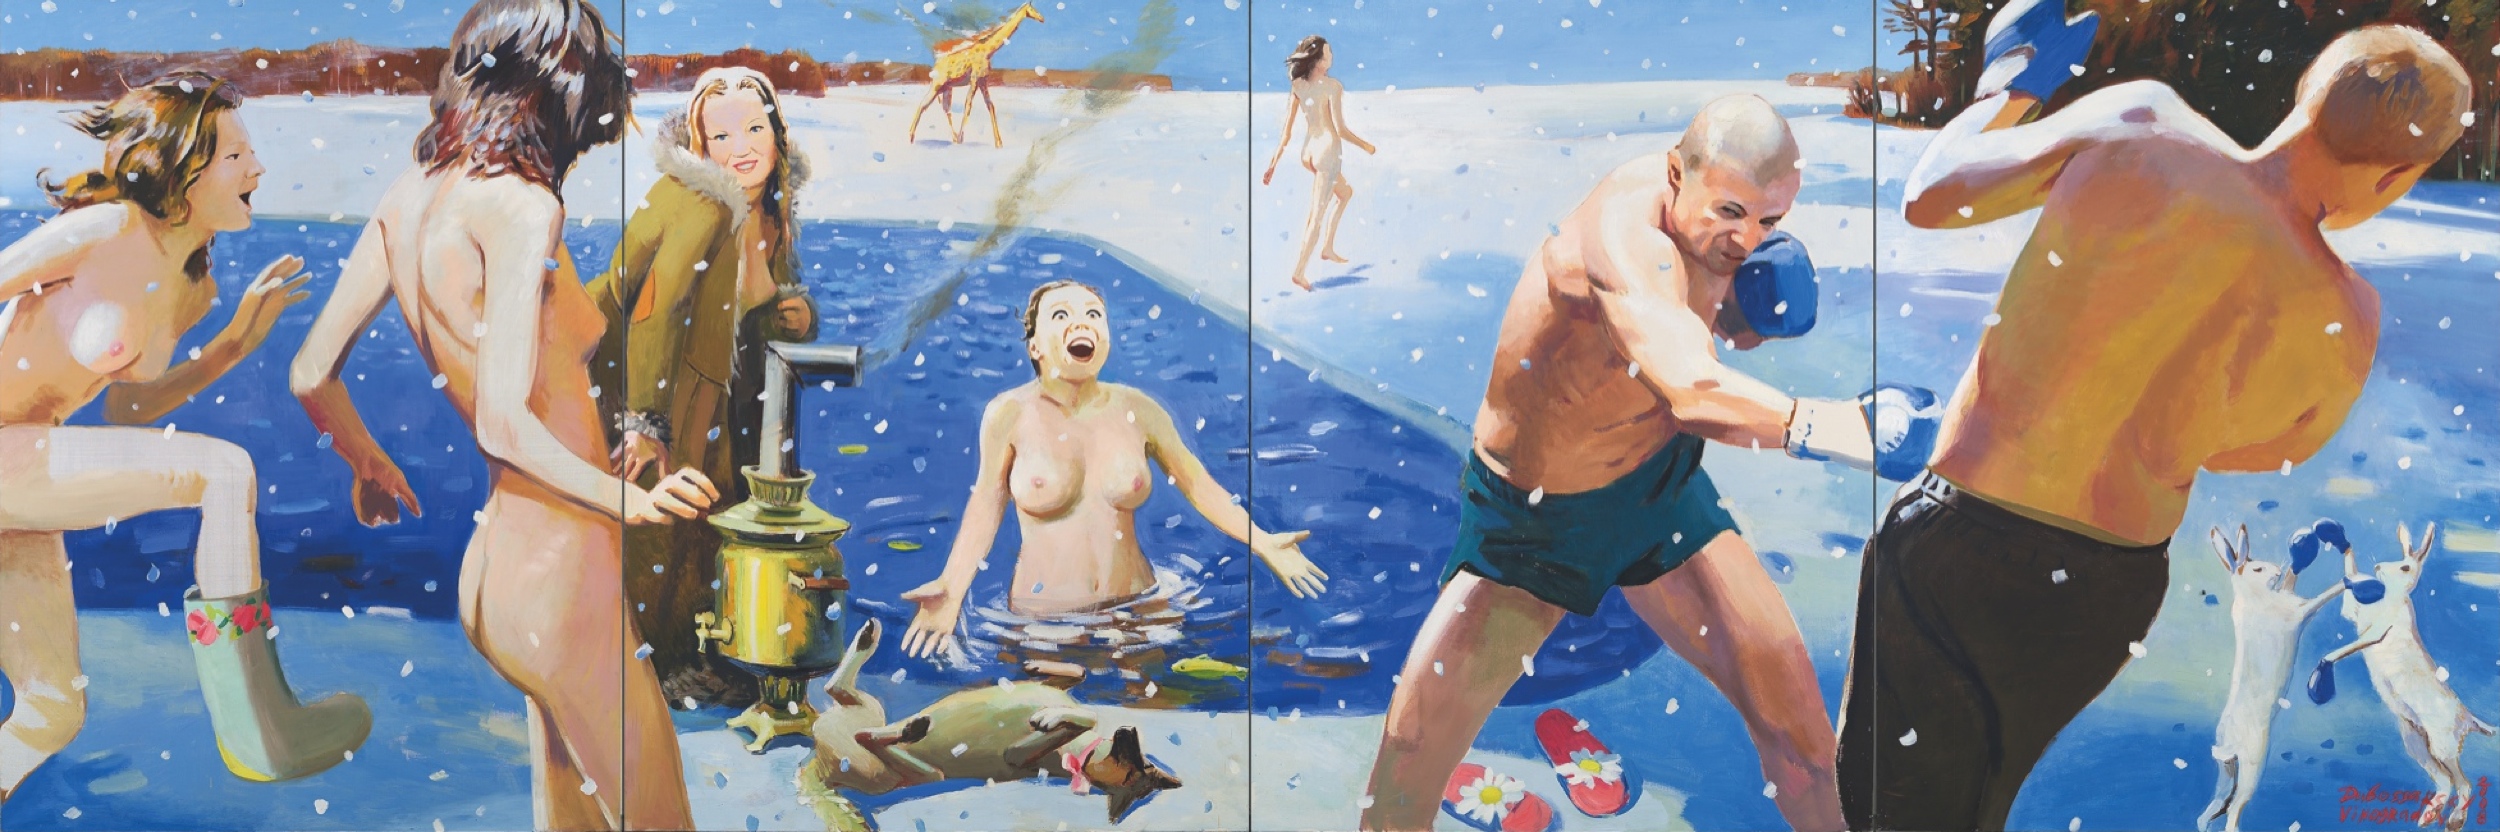   , 2008.   -   (Vladimir Dubossarsky - Aleksandr Vinogradov) -  . -.  . Contemporary Russian Art